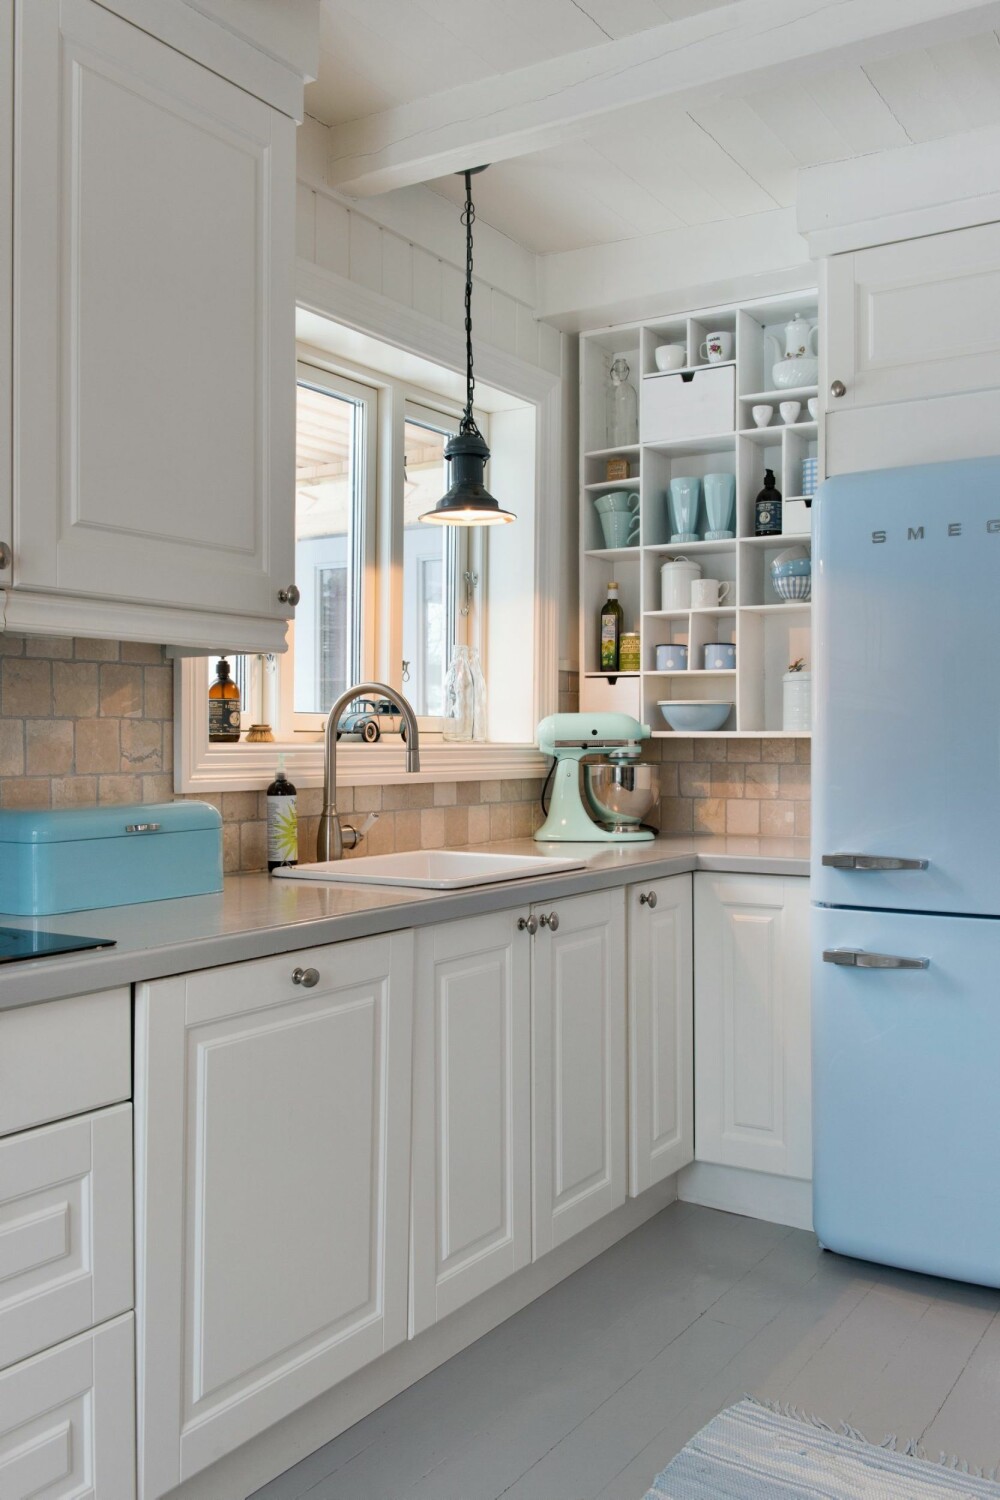 FARGEKLATTER: Det blå kjøleskapet fra Smeg er Marias favoritt. Det gir rommet en leken karakter, og sørger for at uttrykket ellers ikke blir for unisont. Kjøkkeninnredningen heter Malt Fylling Hvit og er fra Strai Kjøkken.